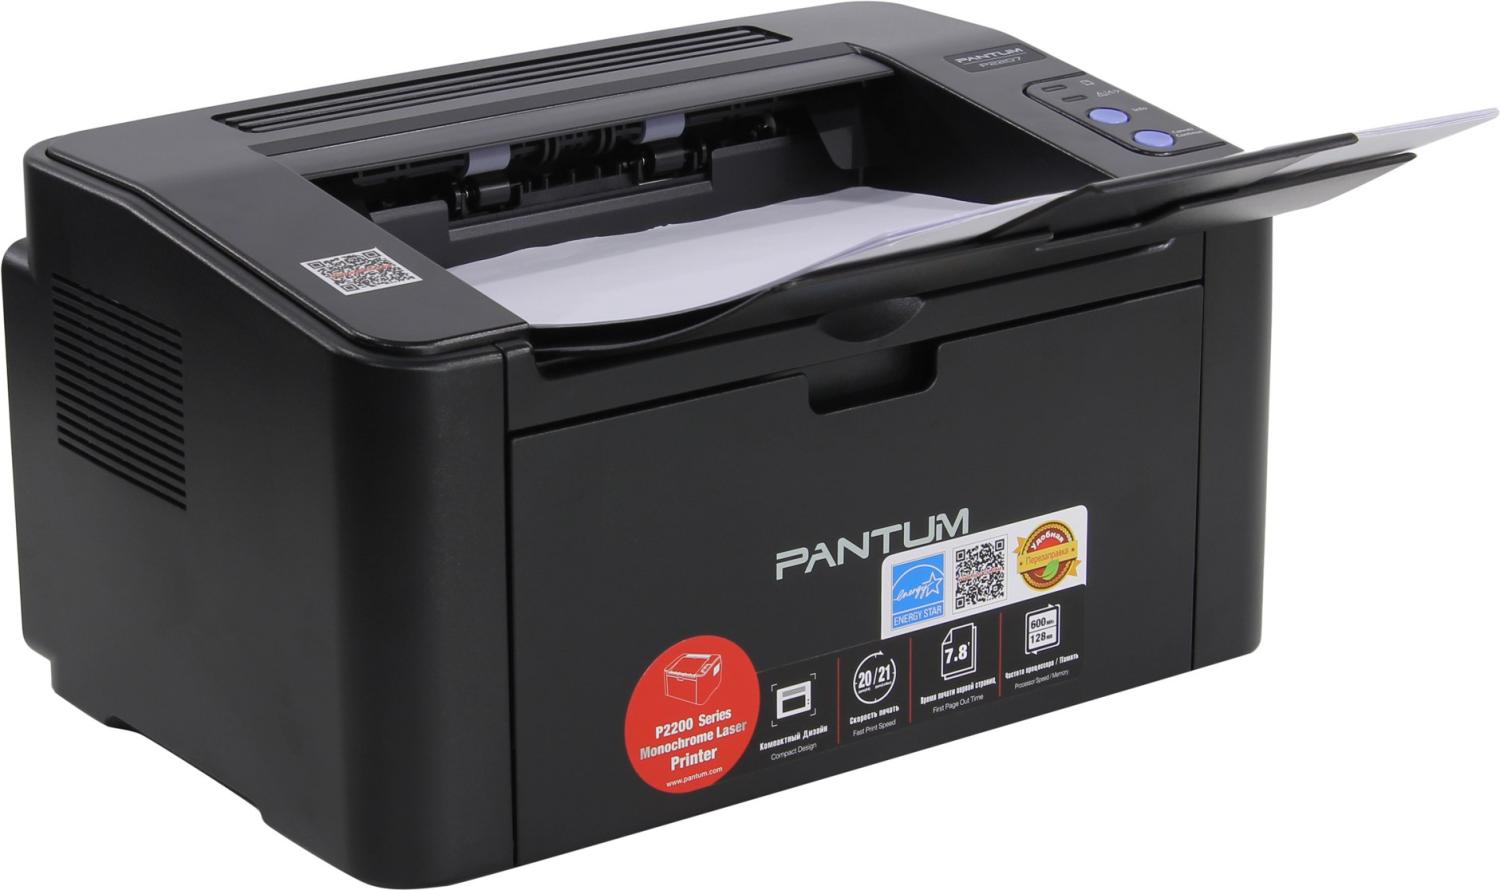 Принтер лазерный Pantum P2207 (A4, 128Mb, 20 стр / мин,1200*1200dpi, USB 2.0, PC-211EV) черный